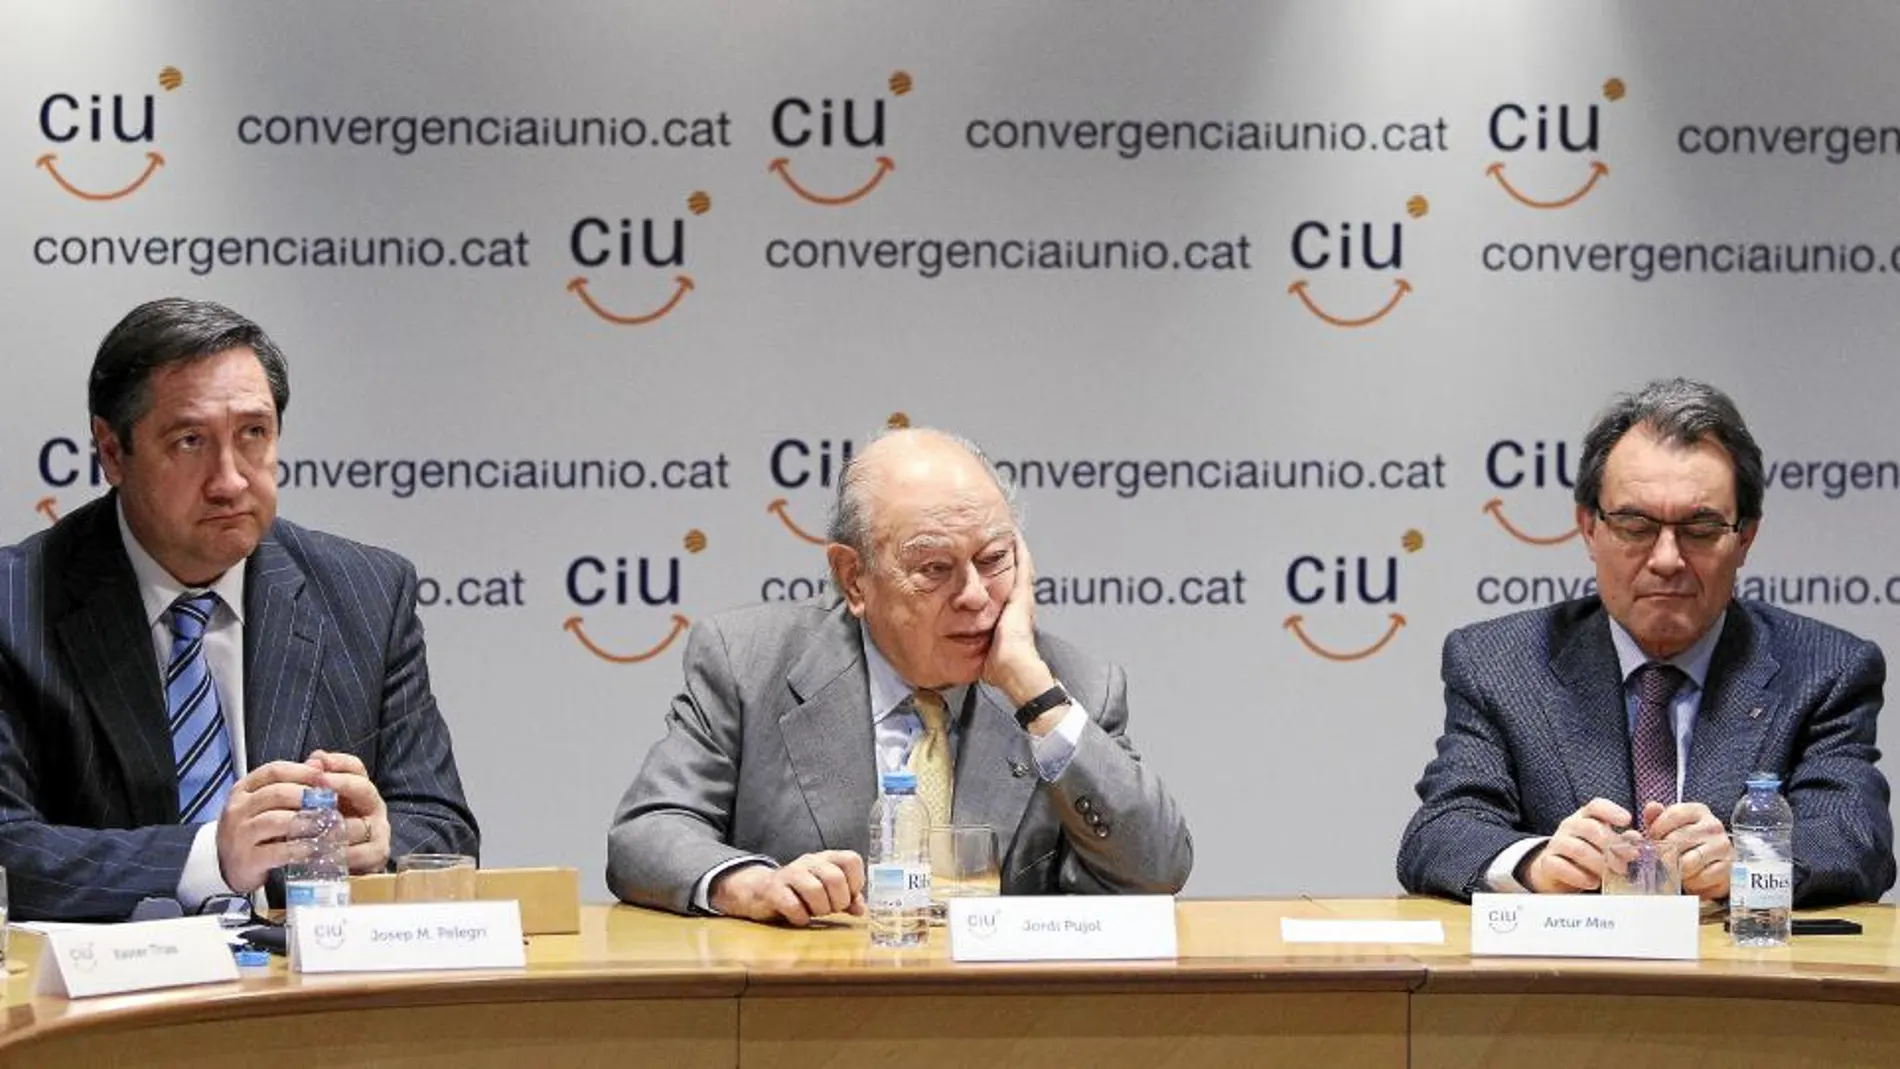 Pelegrí, Pujol y Mas, durante la comisión ejecutiva nacional de CiU celebrada ayer en la sede Unió